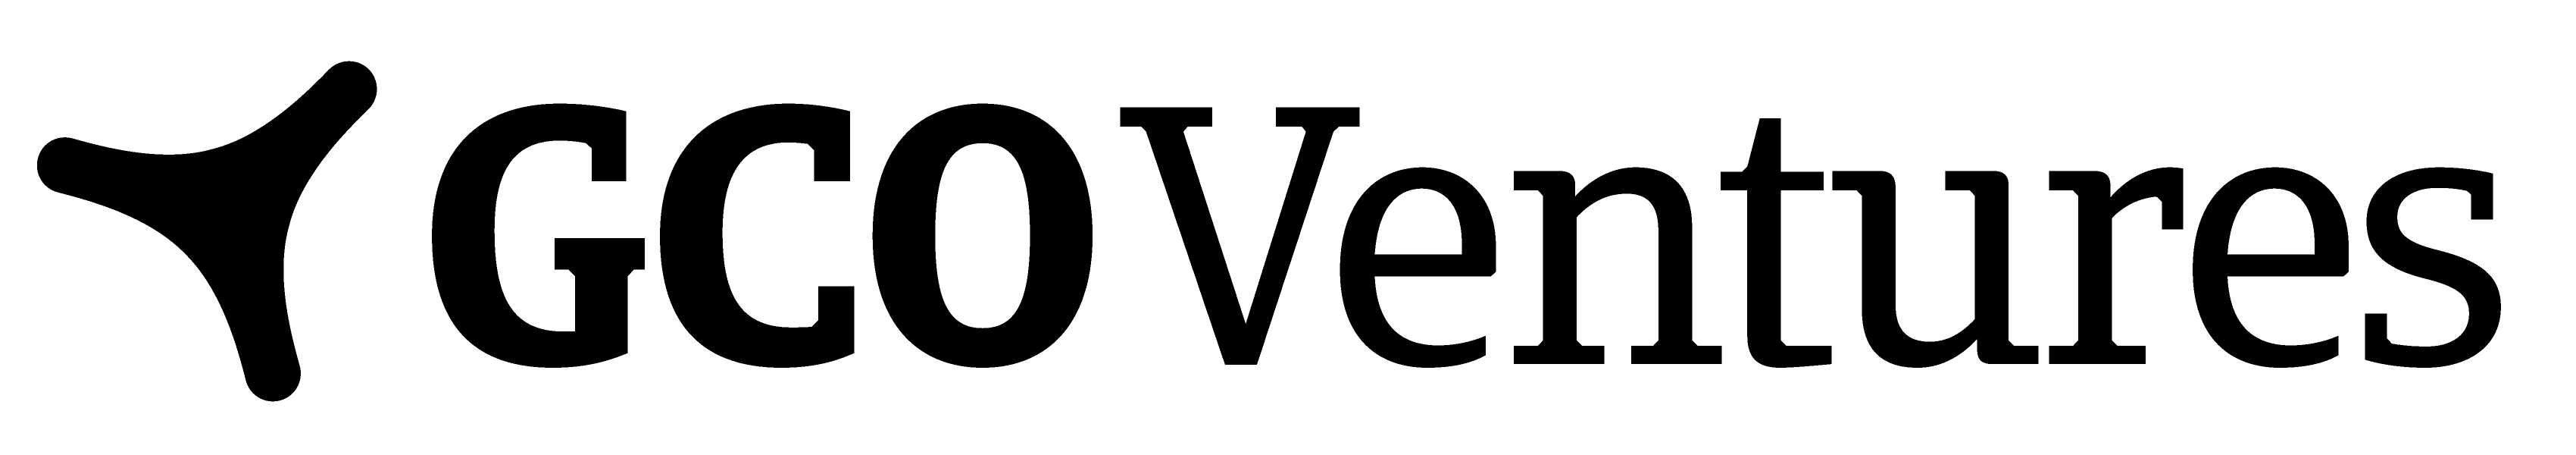 Gcov logo black